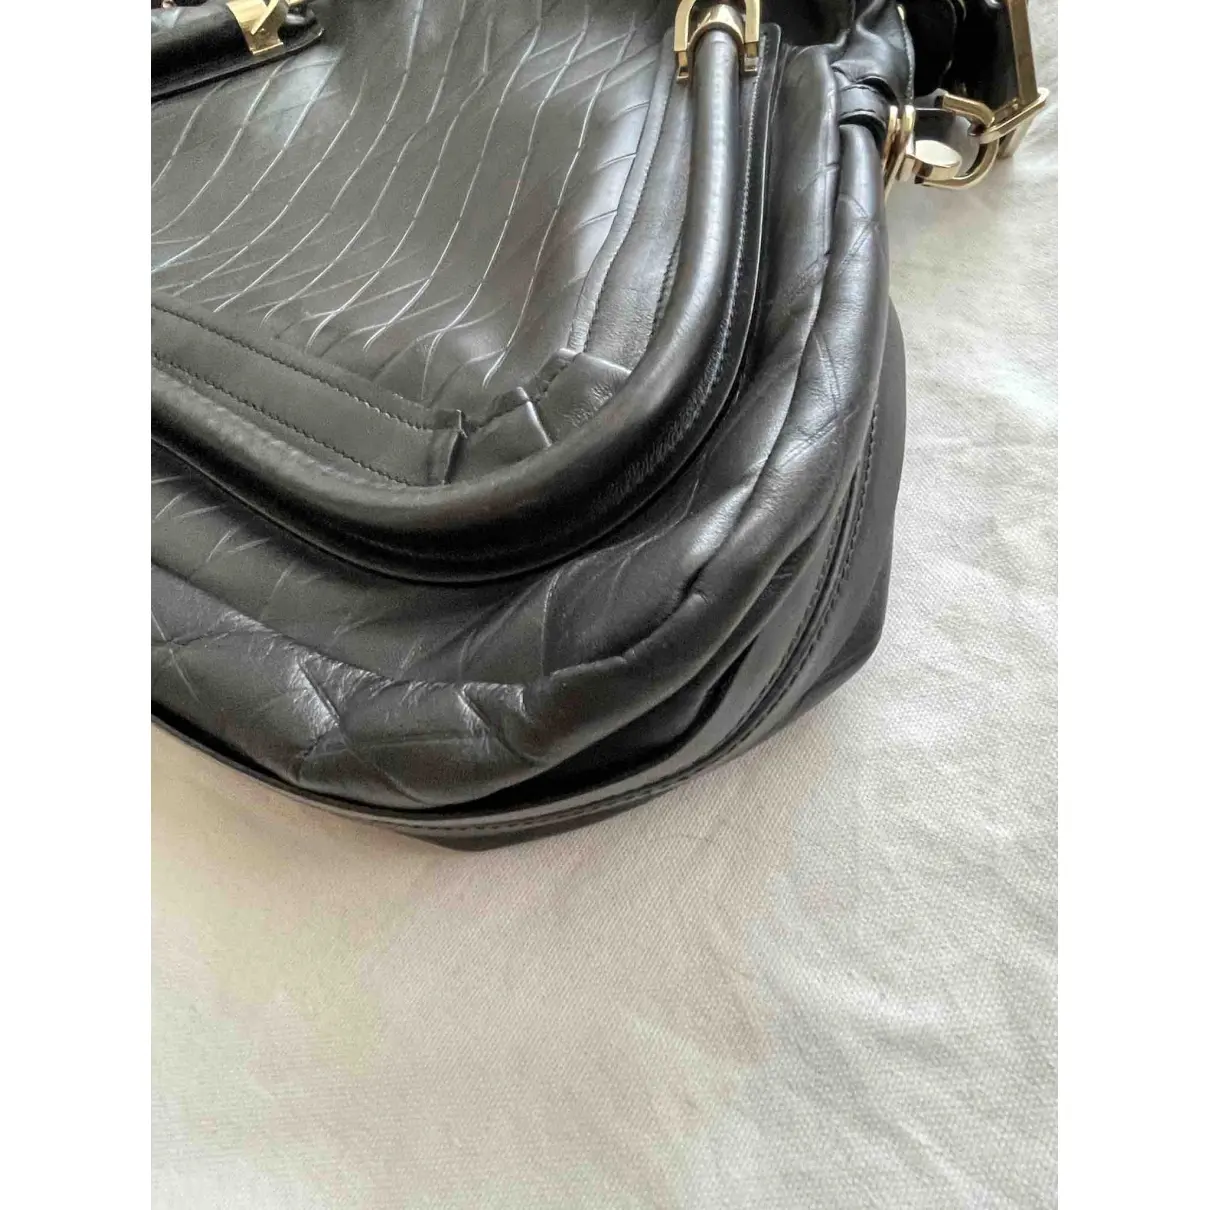 Paraty leather handbag Chloé